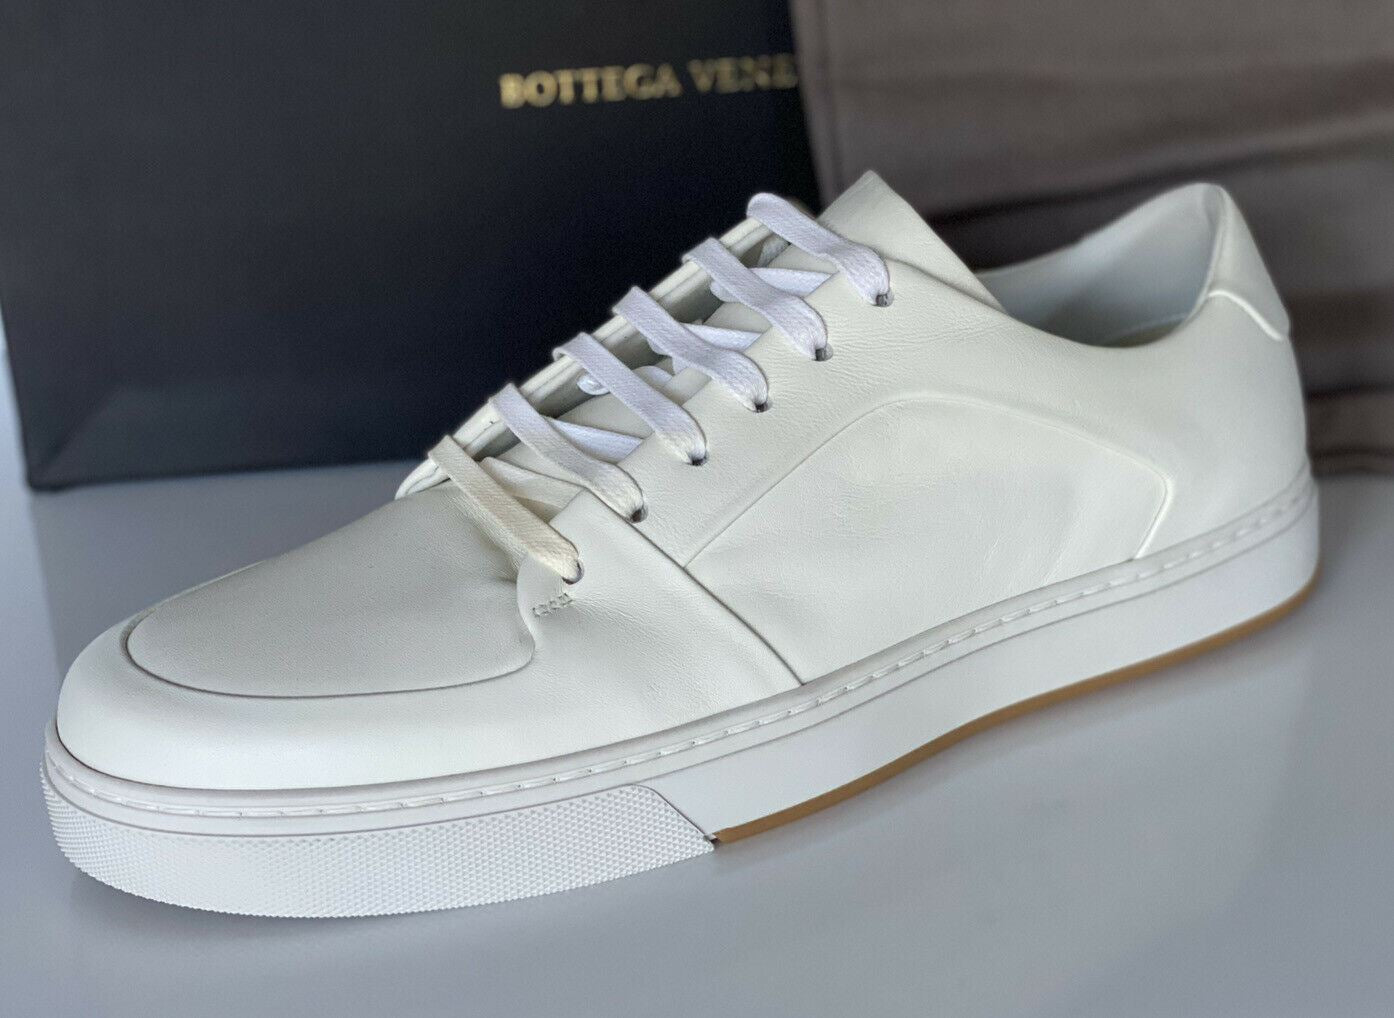 NIB 750 долларов США Bottega Veneta Мужские белые кроссовки Speedster из телячьей кожи 9 (США) 608761 